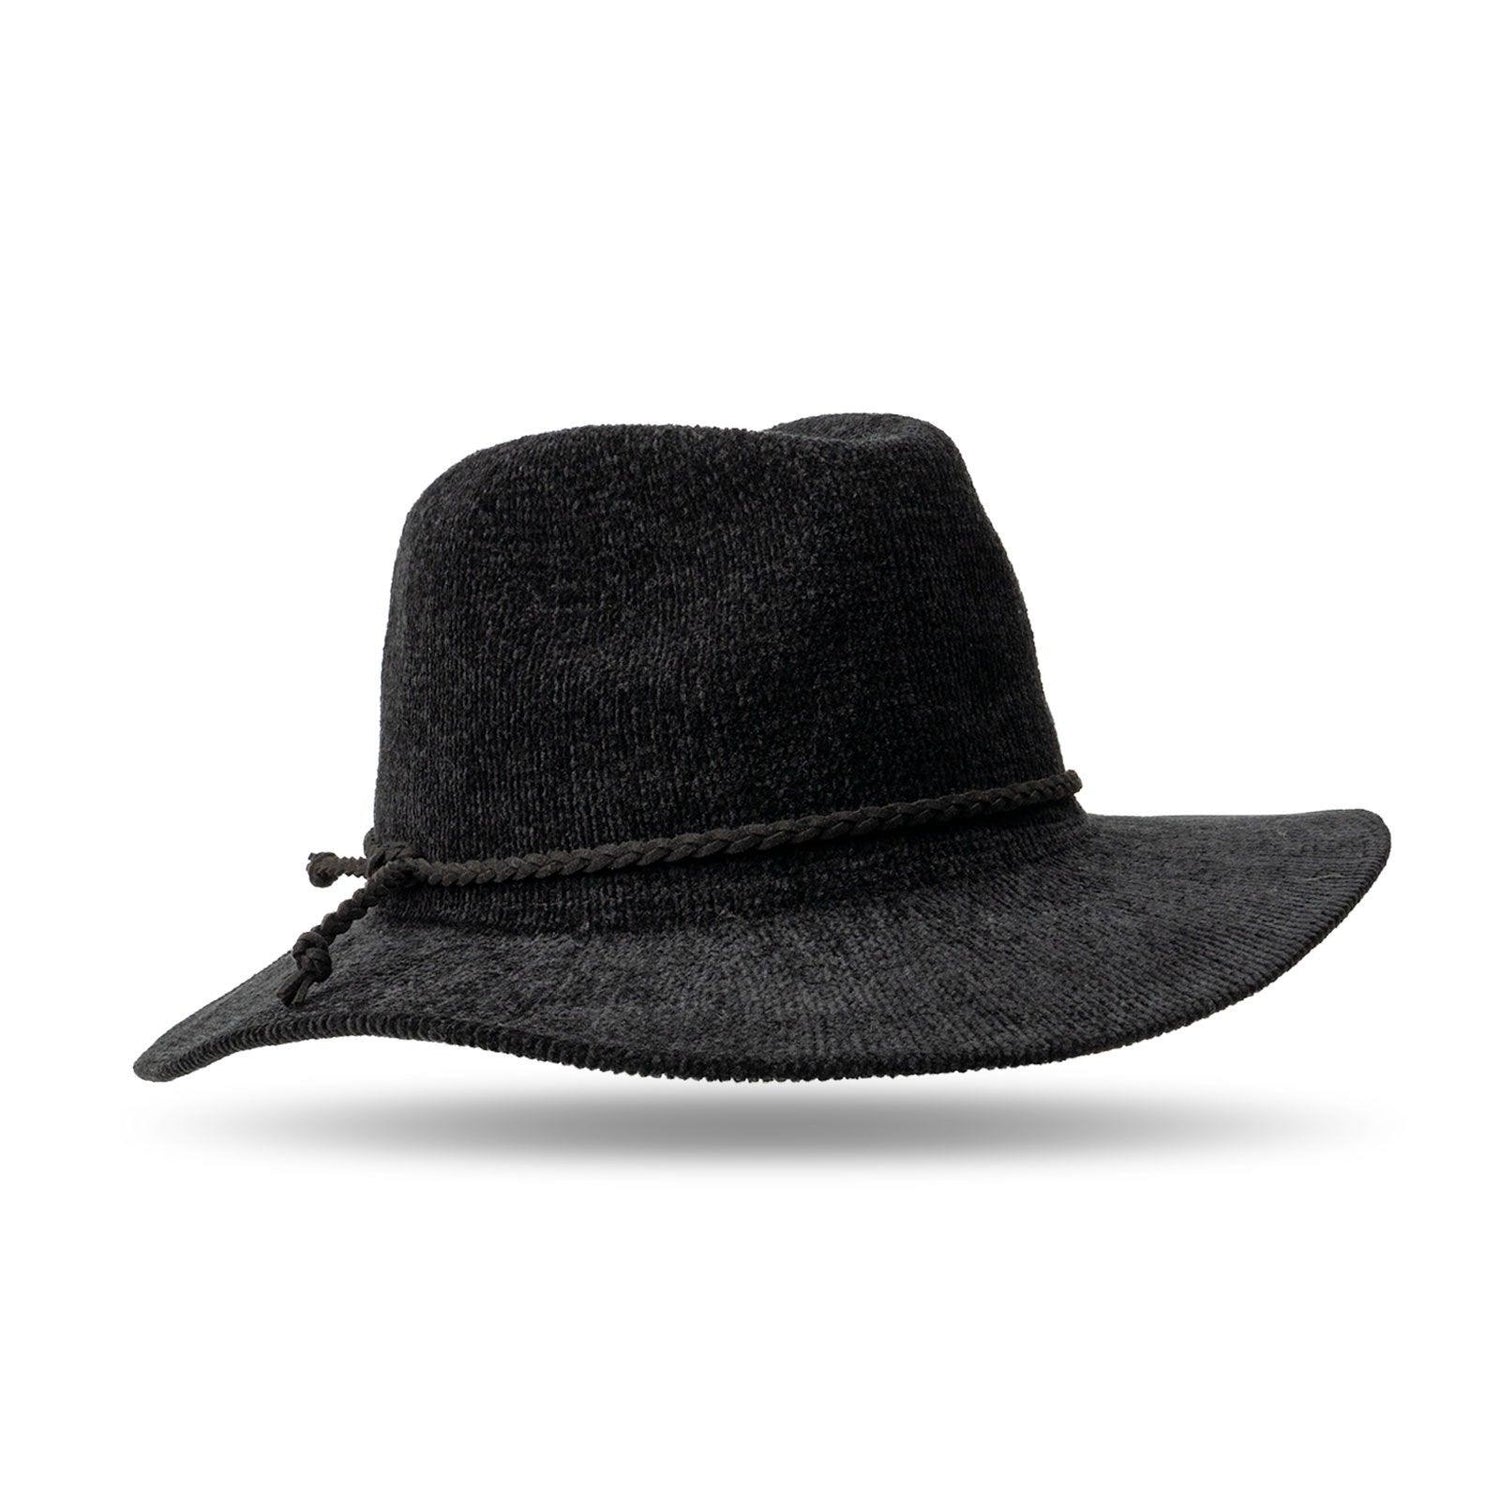 Fold Away Panama Hat.